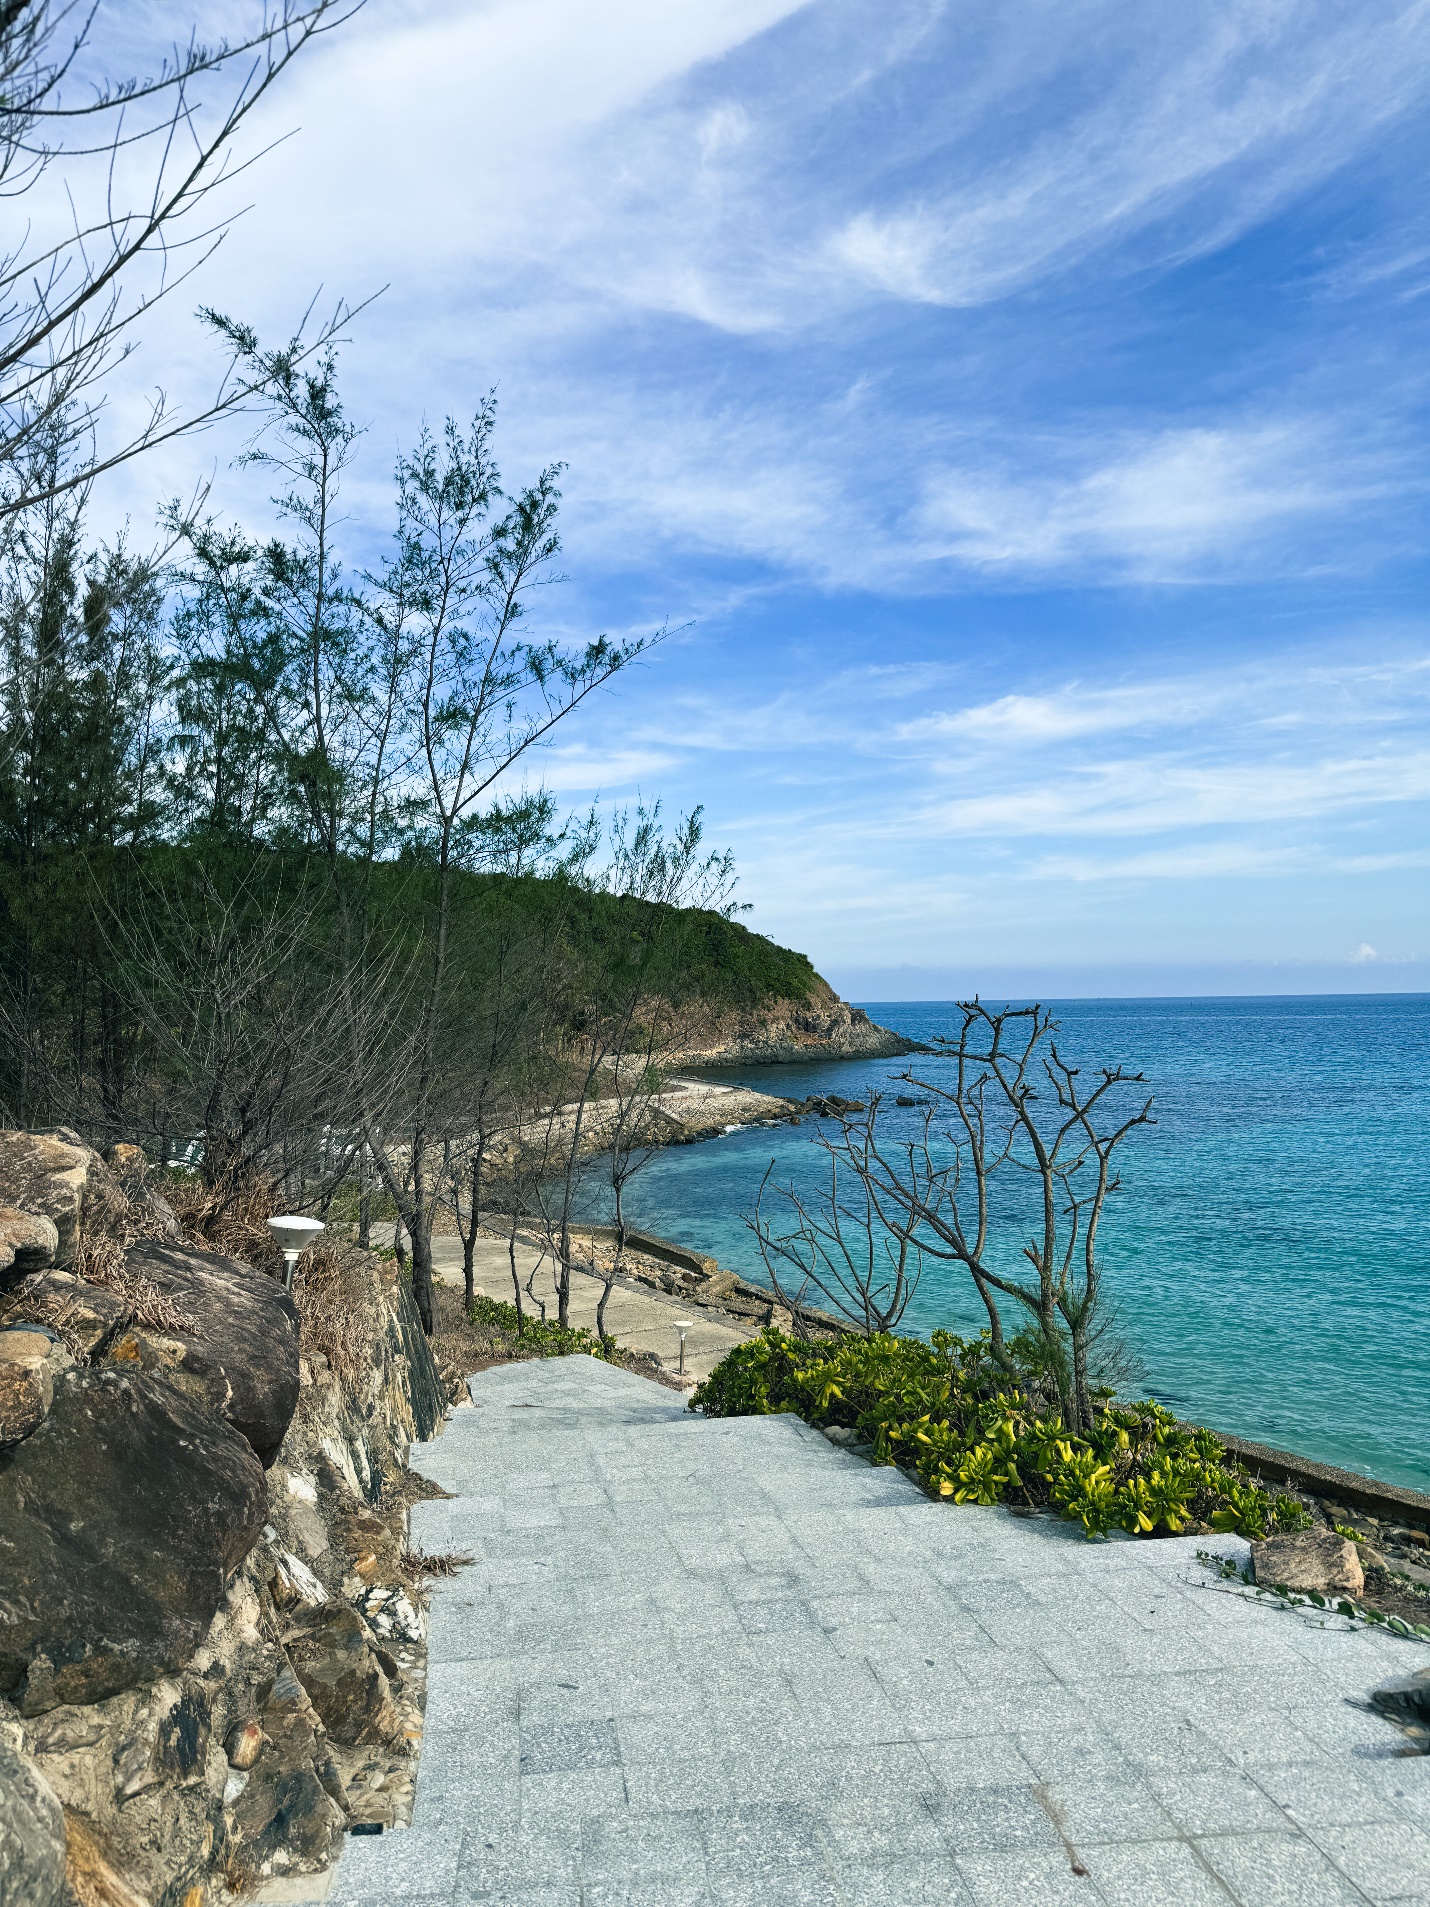 Dừng chân ở Côn Đảo, du khách ‘mê’ cách làm du lịch xanh - sạch - bền vững - 14